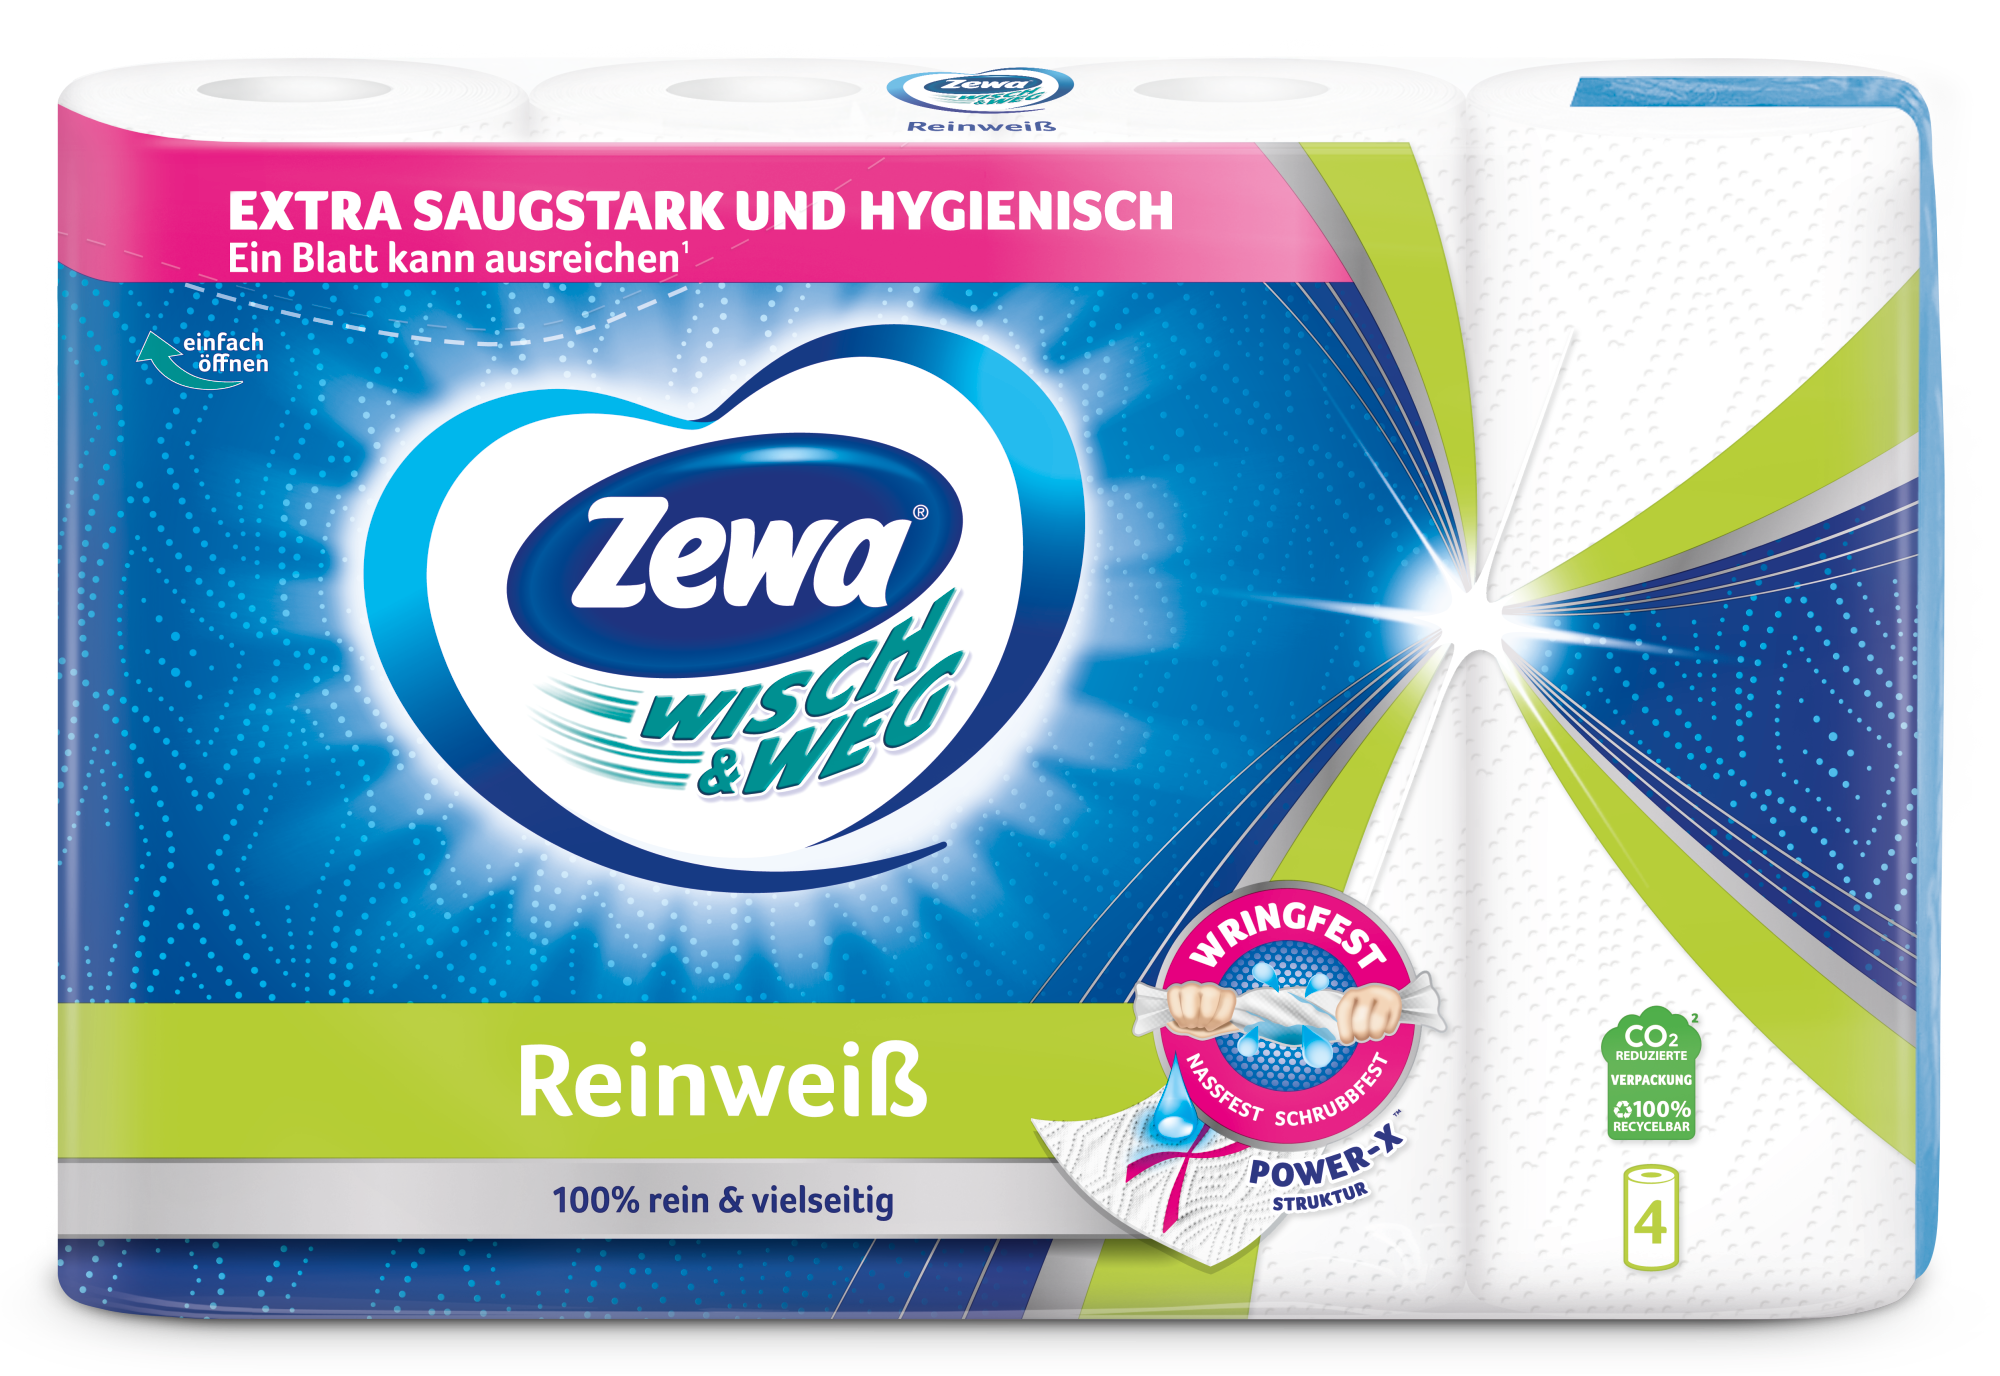 Zewa Wisch&Weg Reinweiss Küchenrolle Mit Power-X-Struktur 48 Stück 